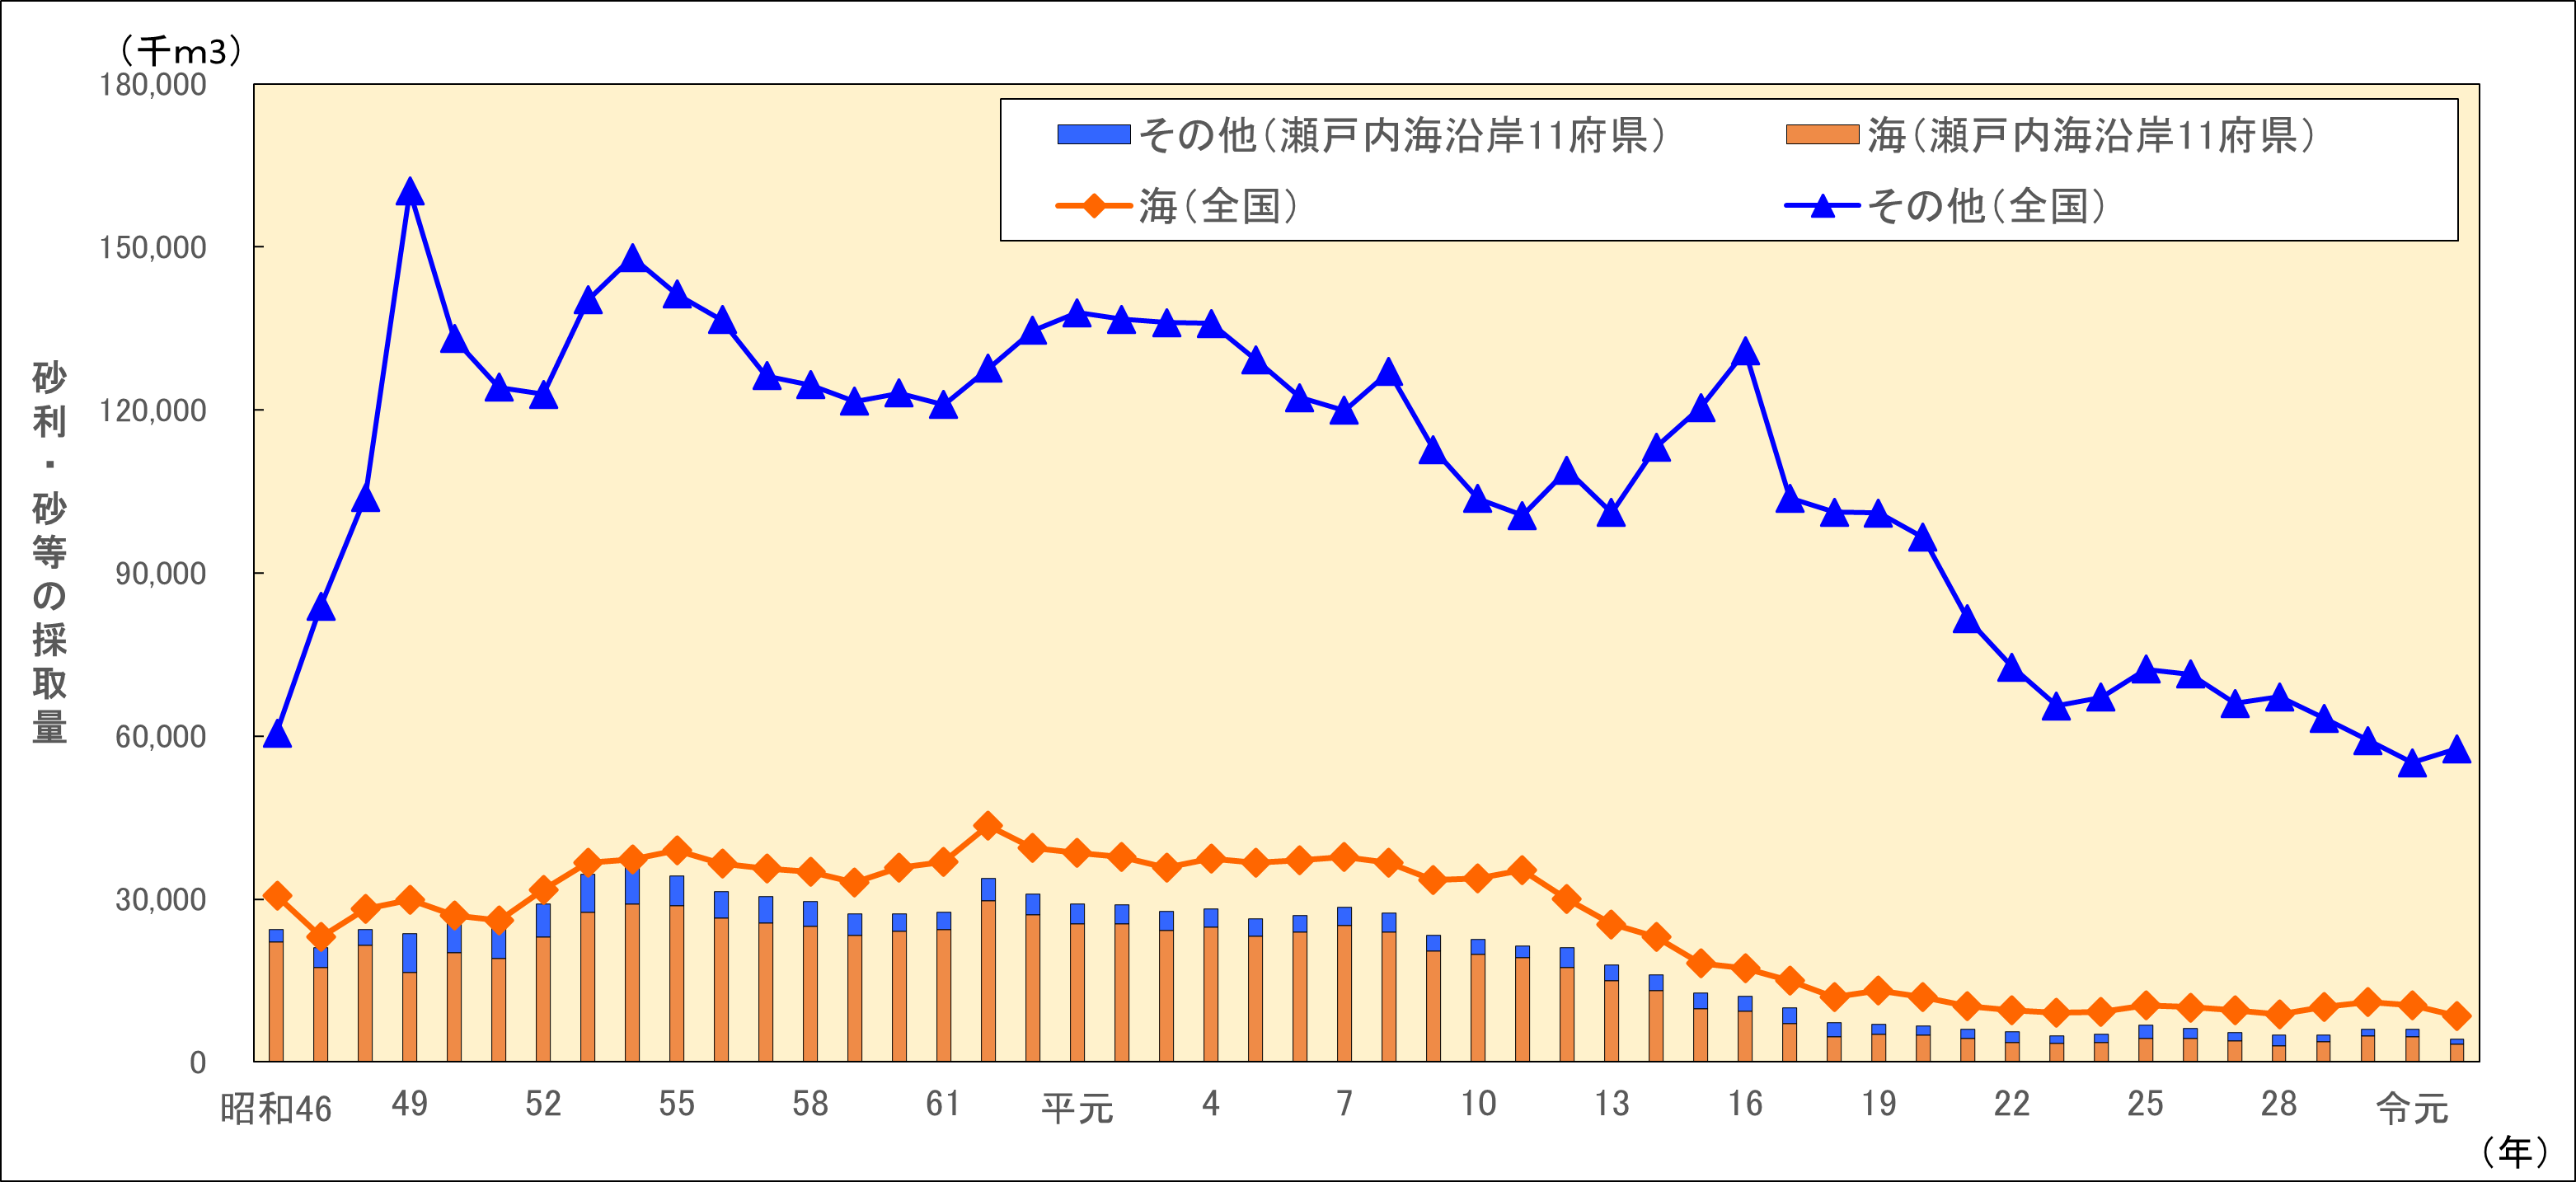 瀬戸内海における砂利・砂等の採取量の推移